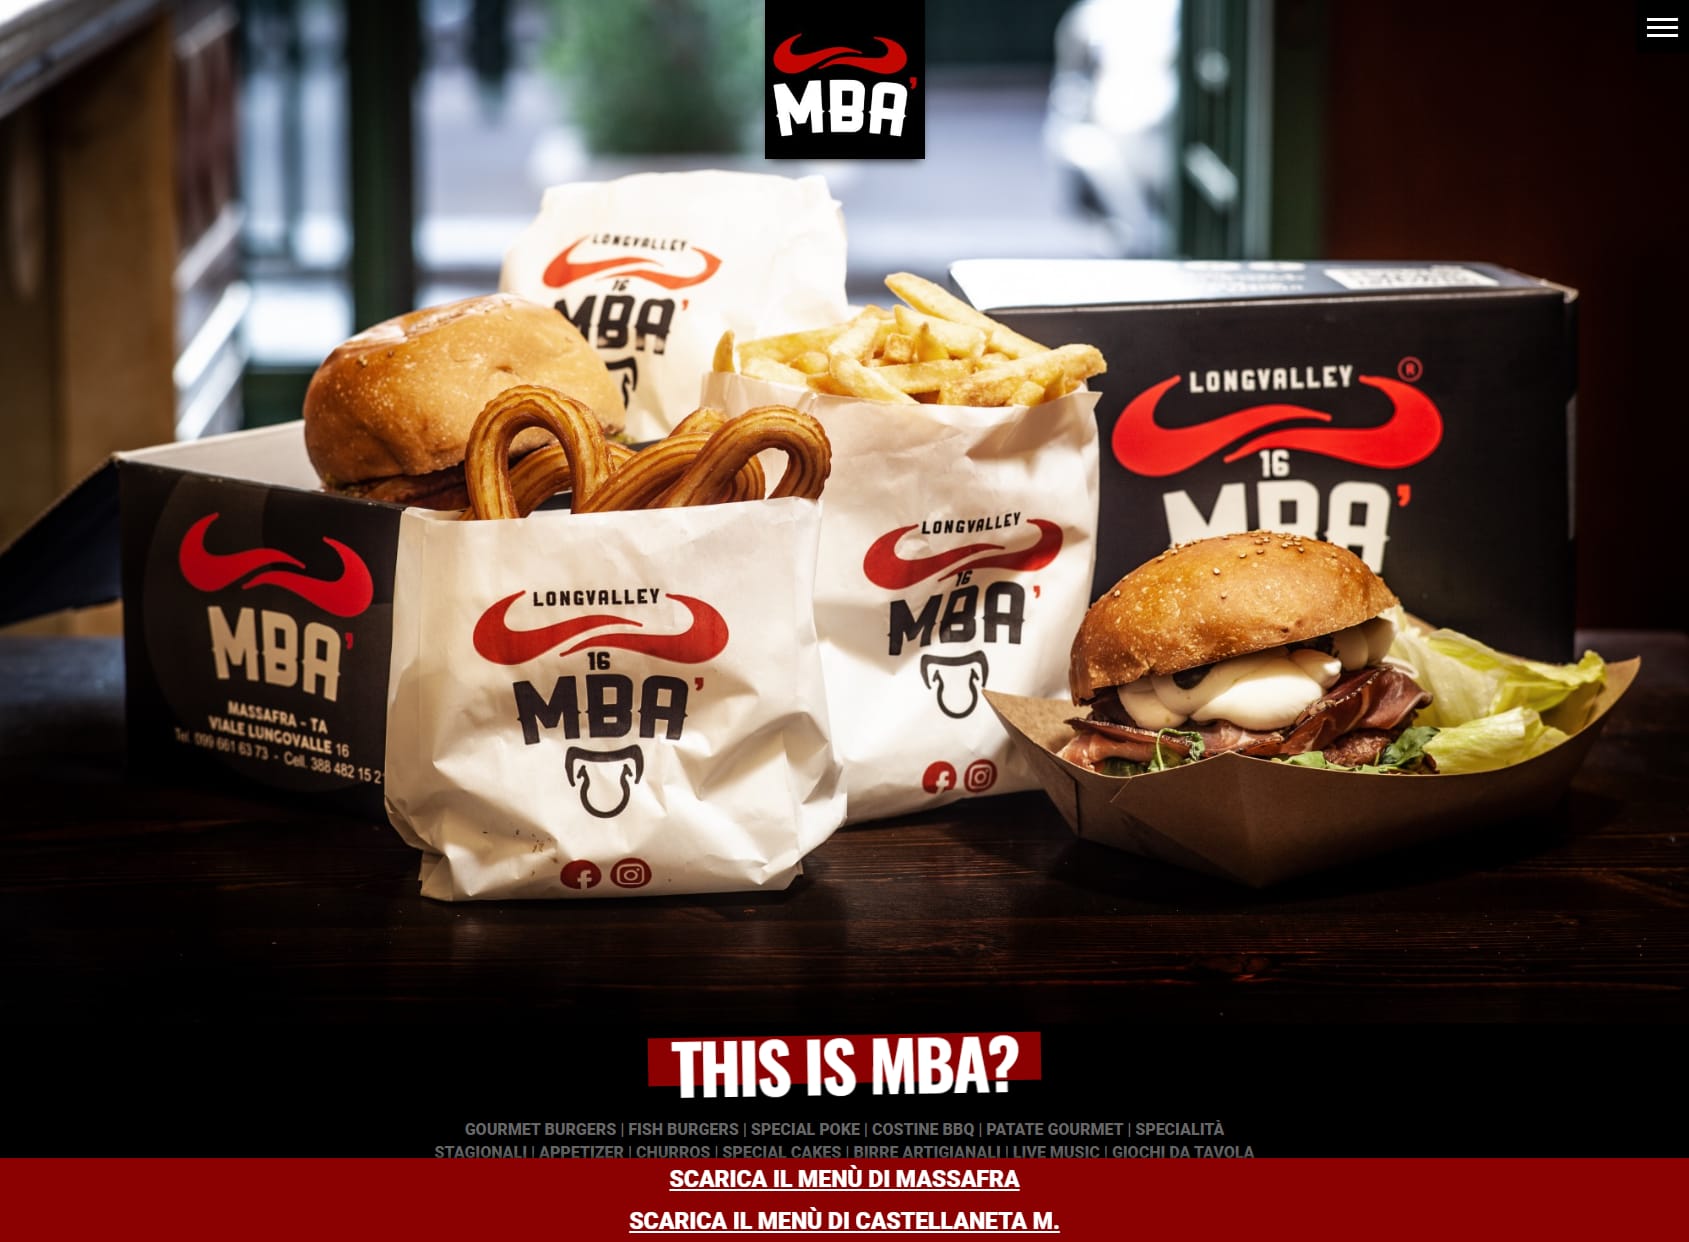 MBA' hamburgeria